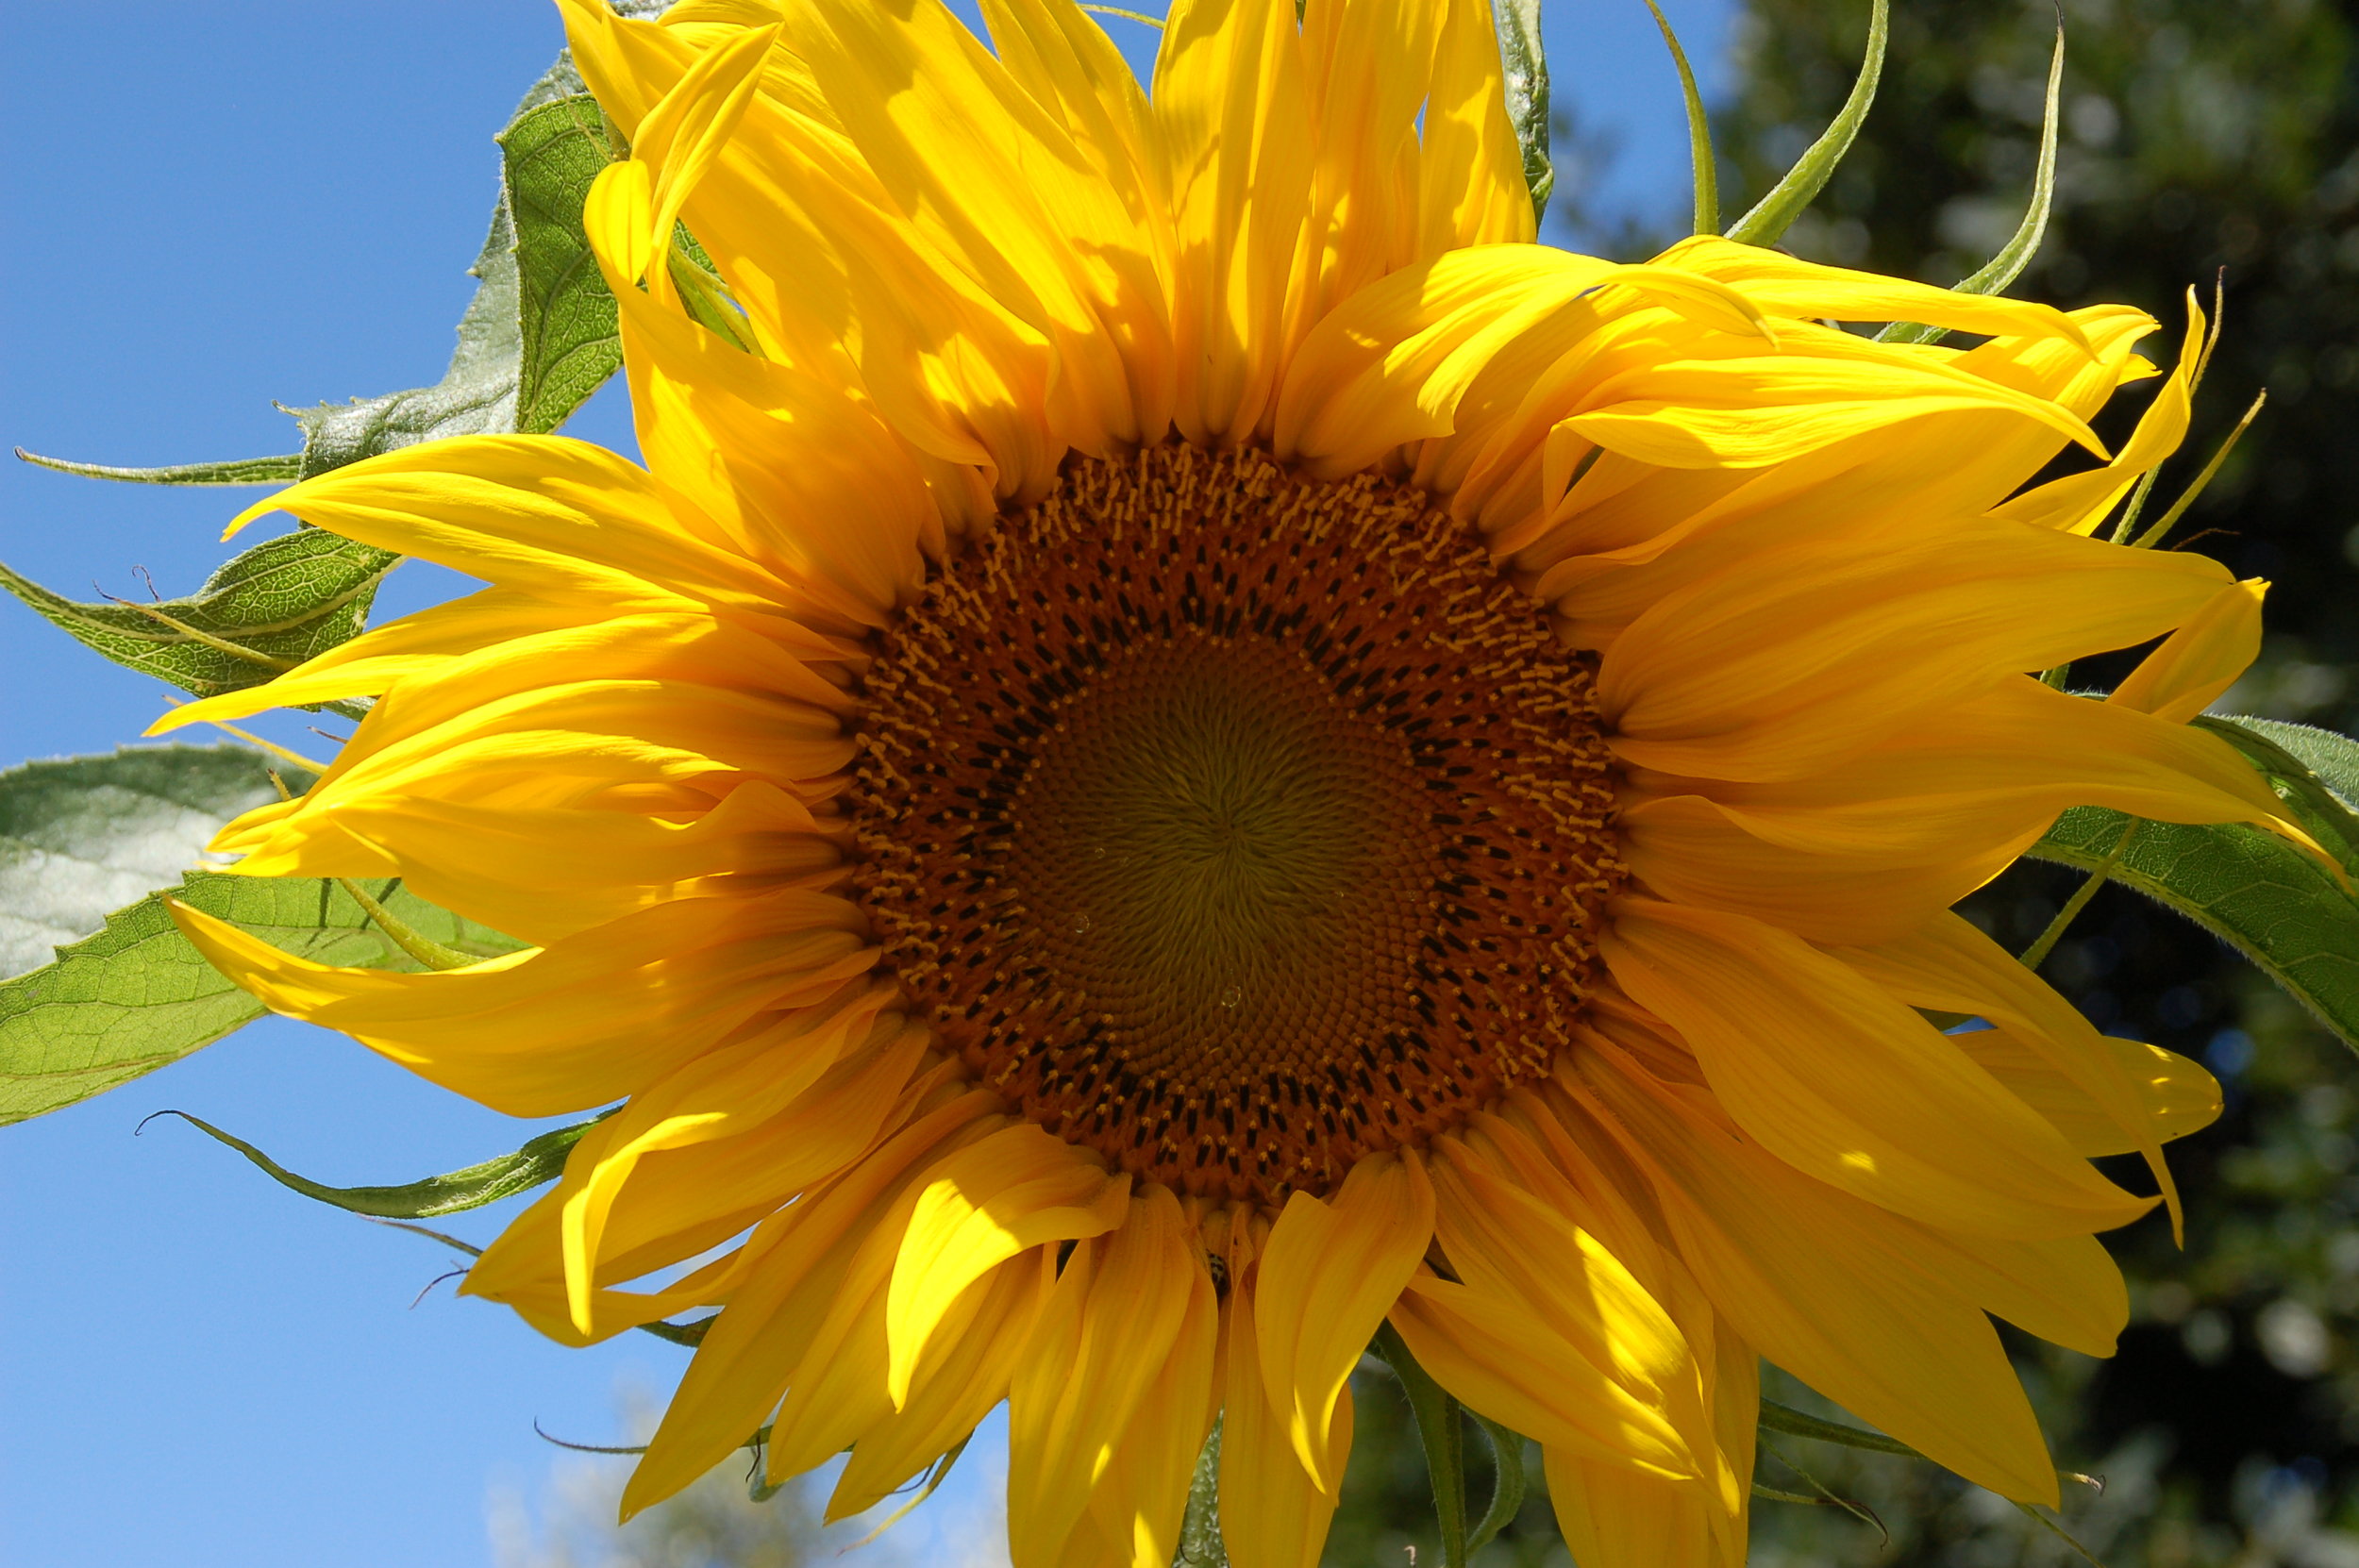 Sunflower.jpg